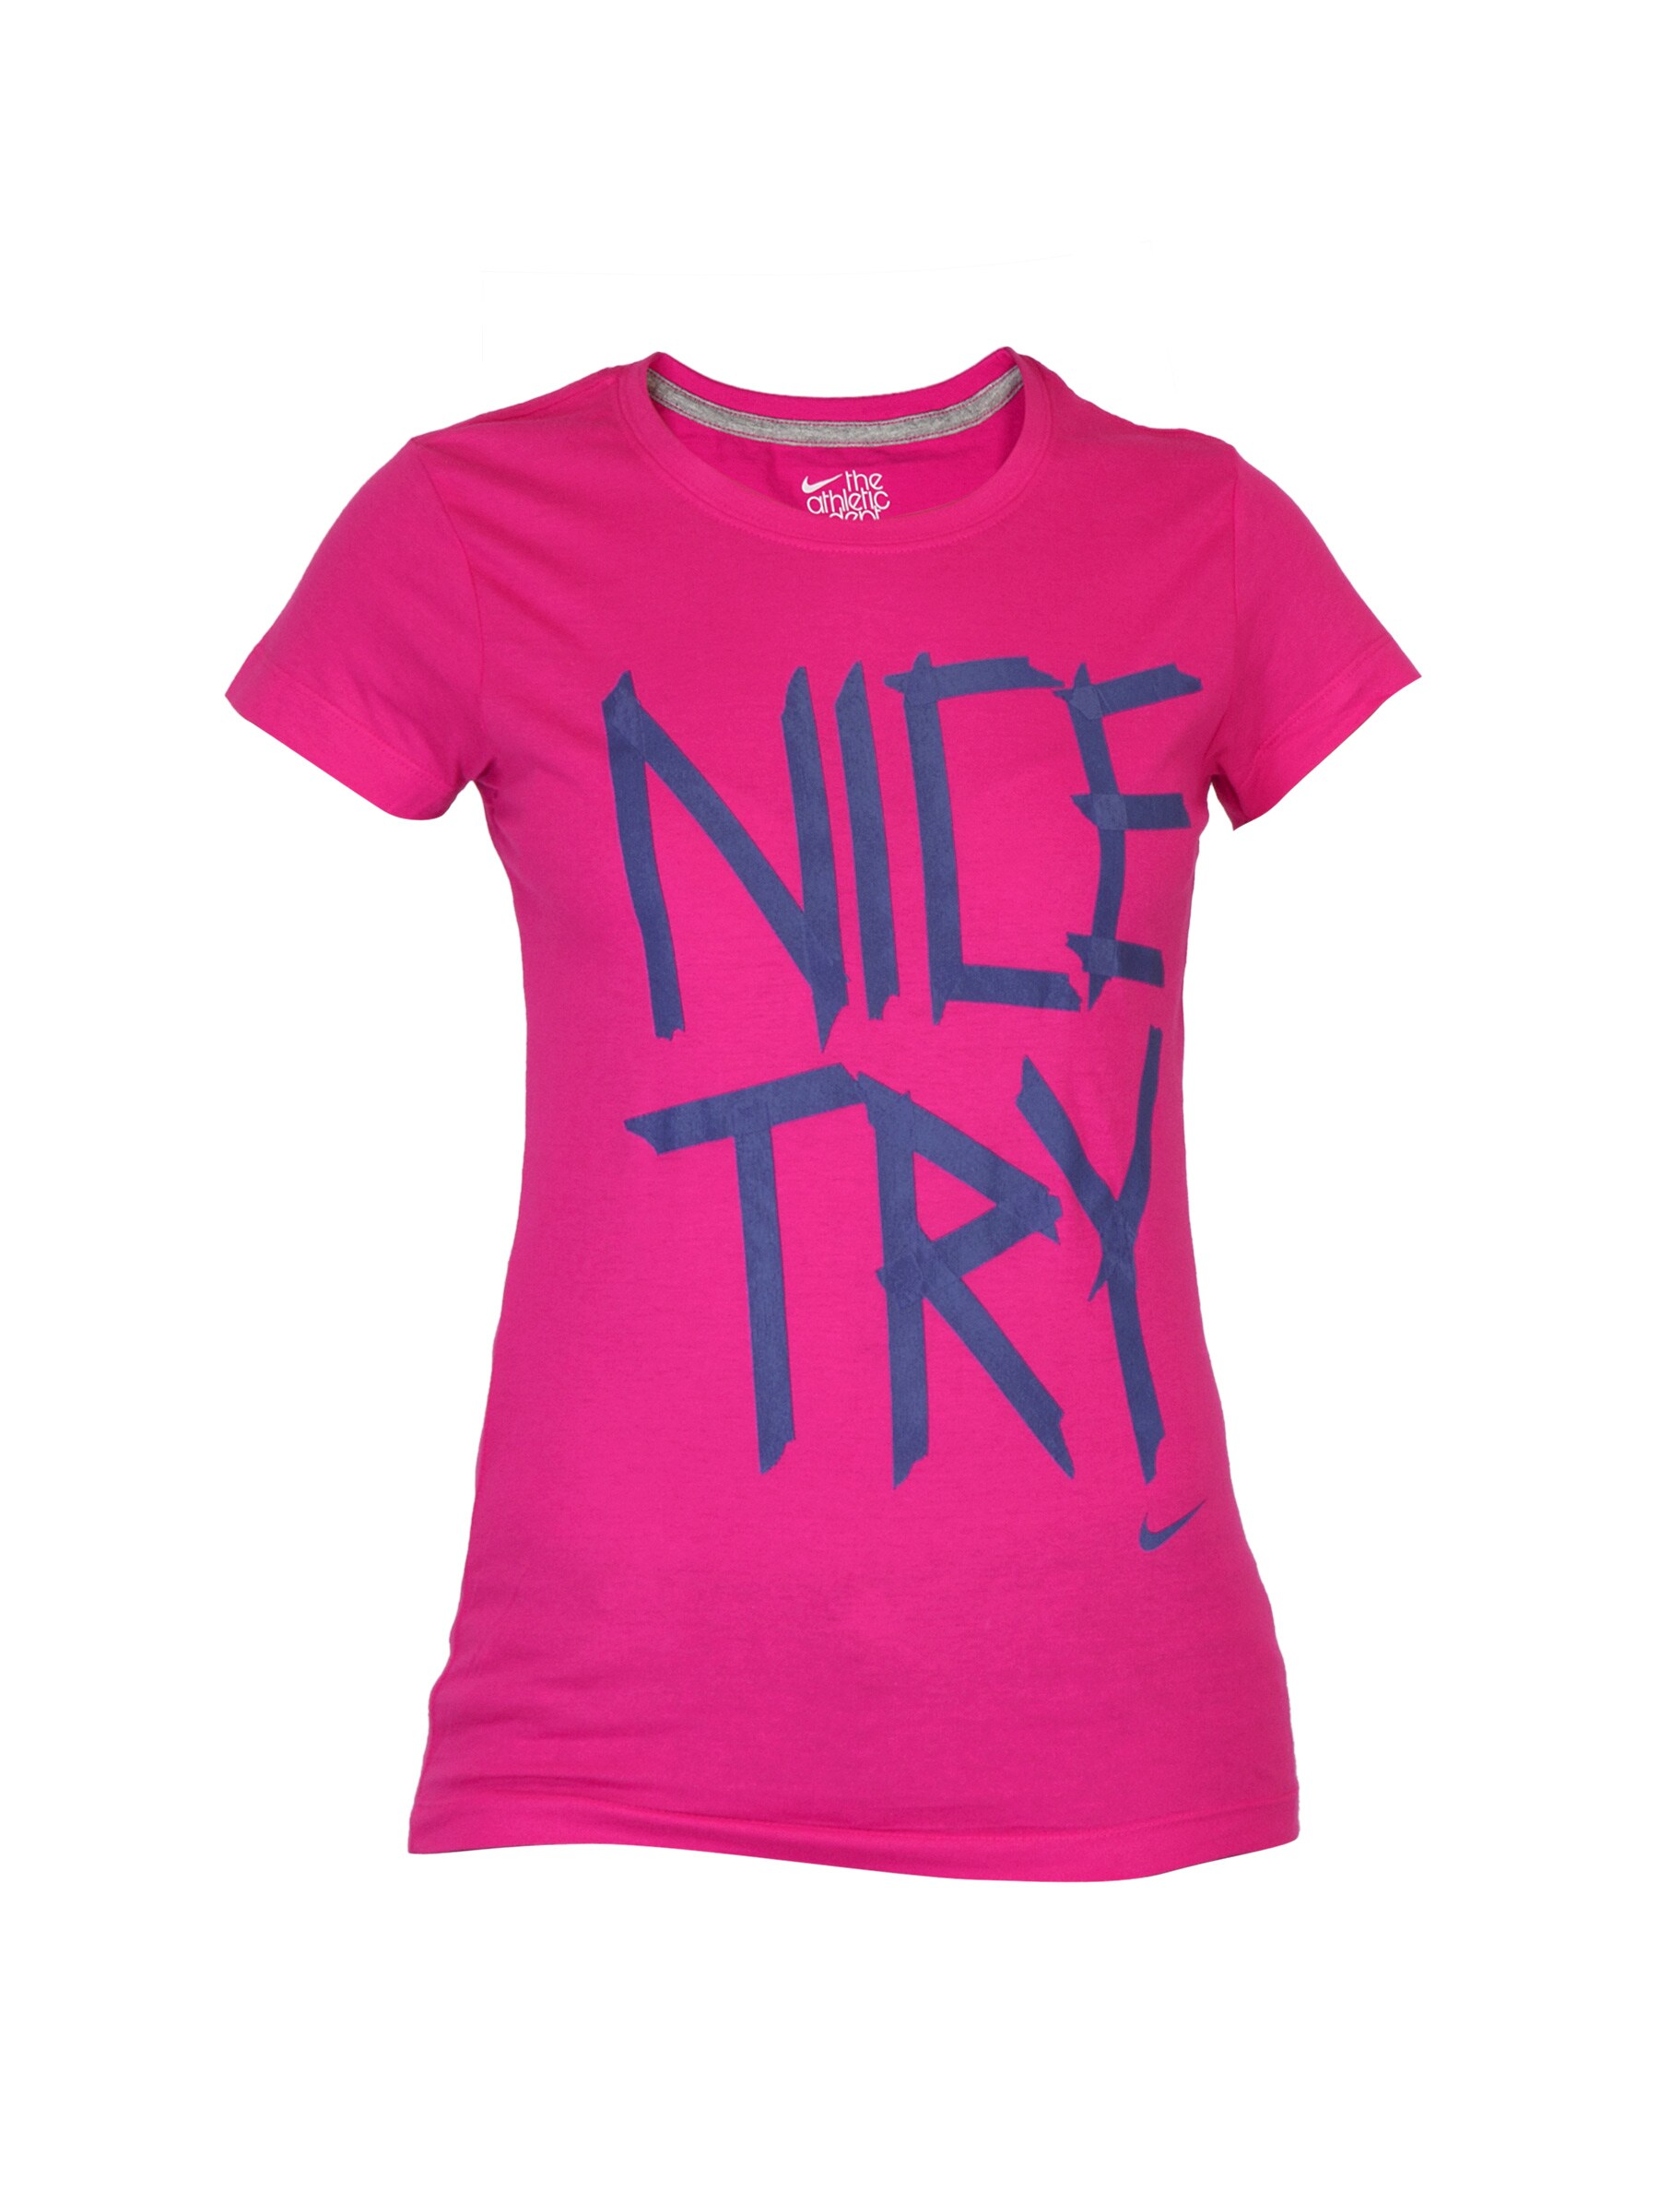 Nike Women Try Me Pink T-shirt